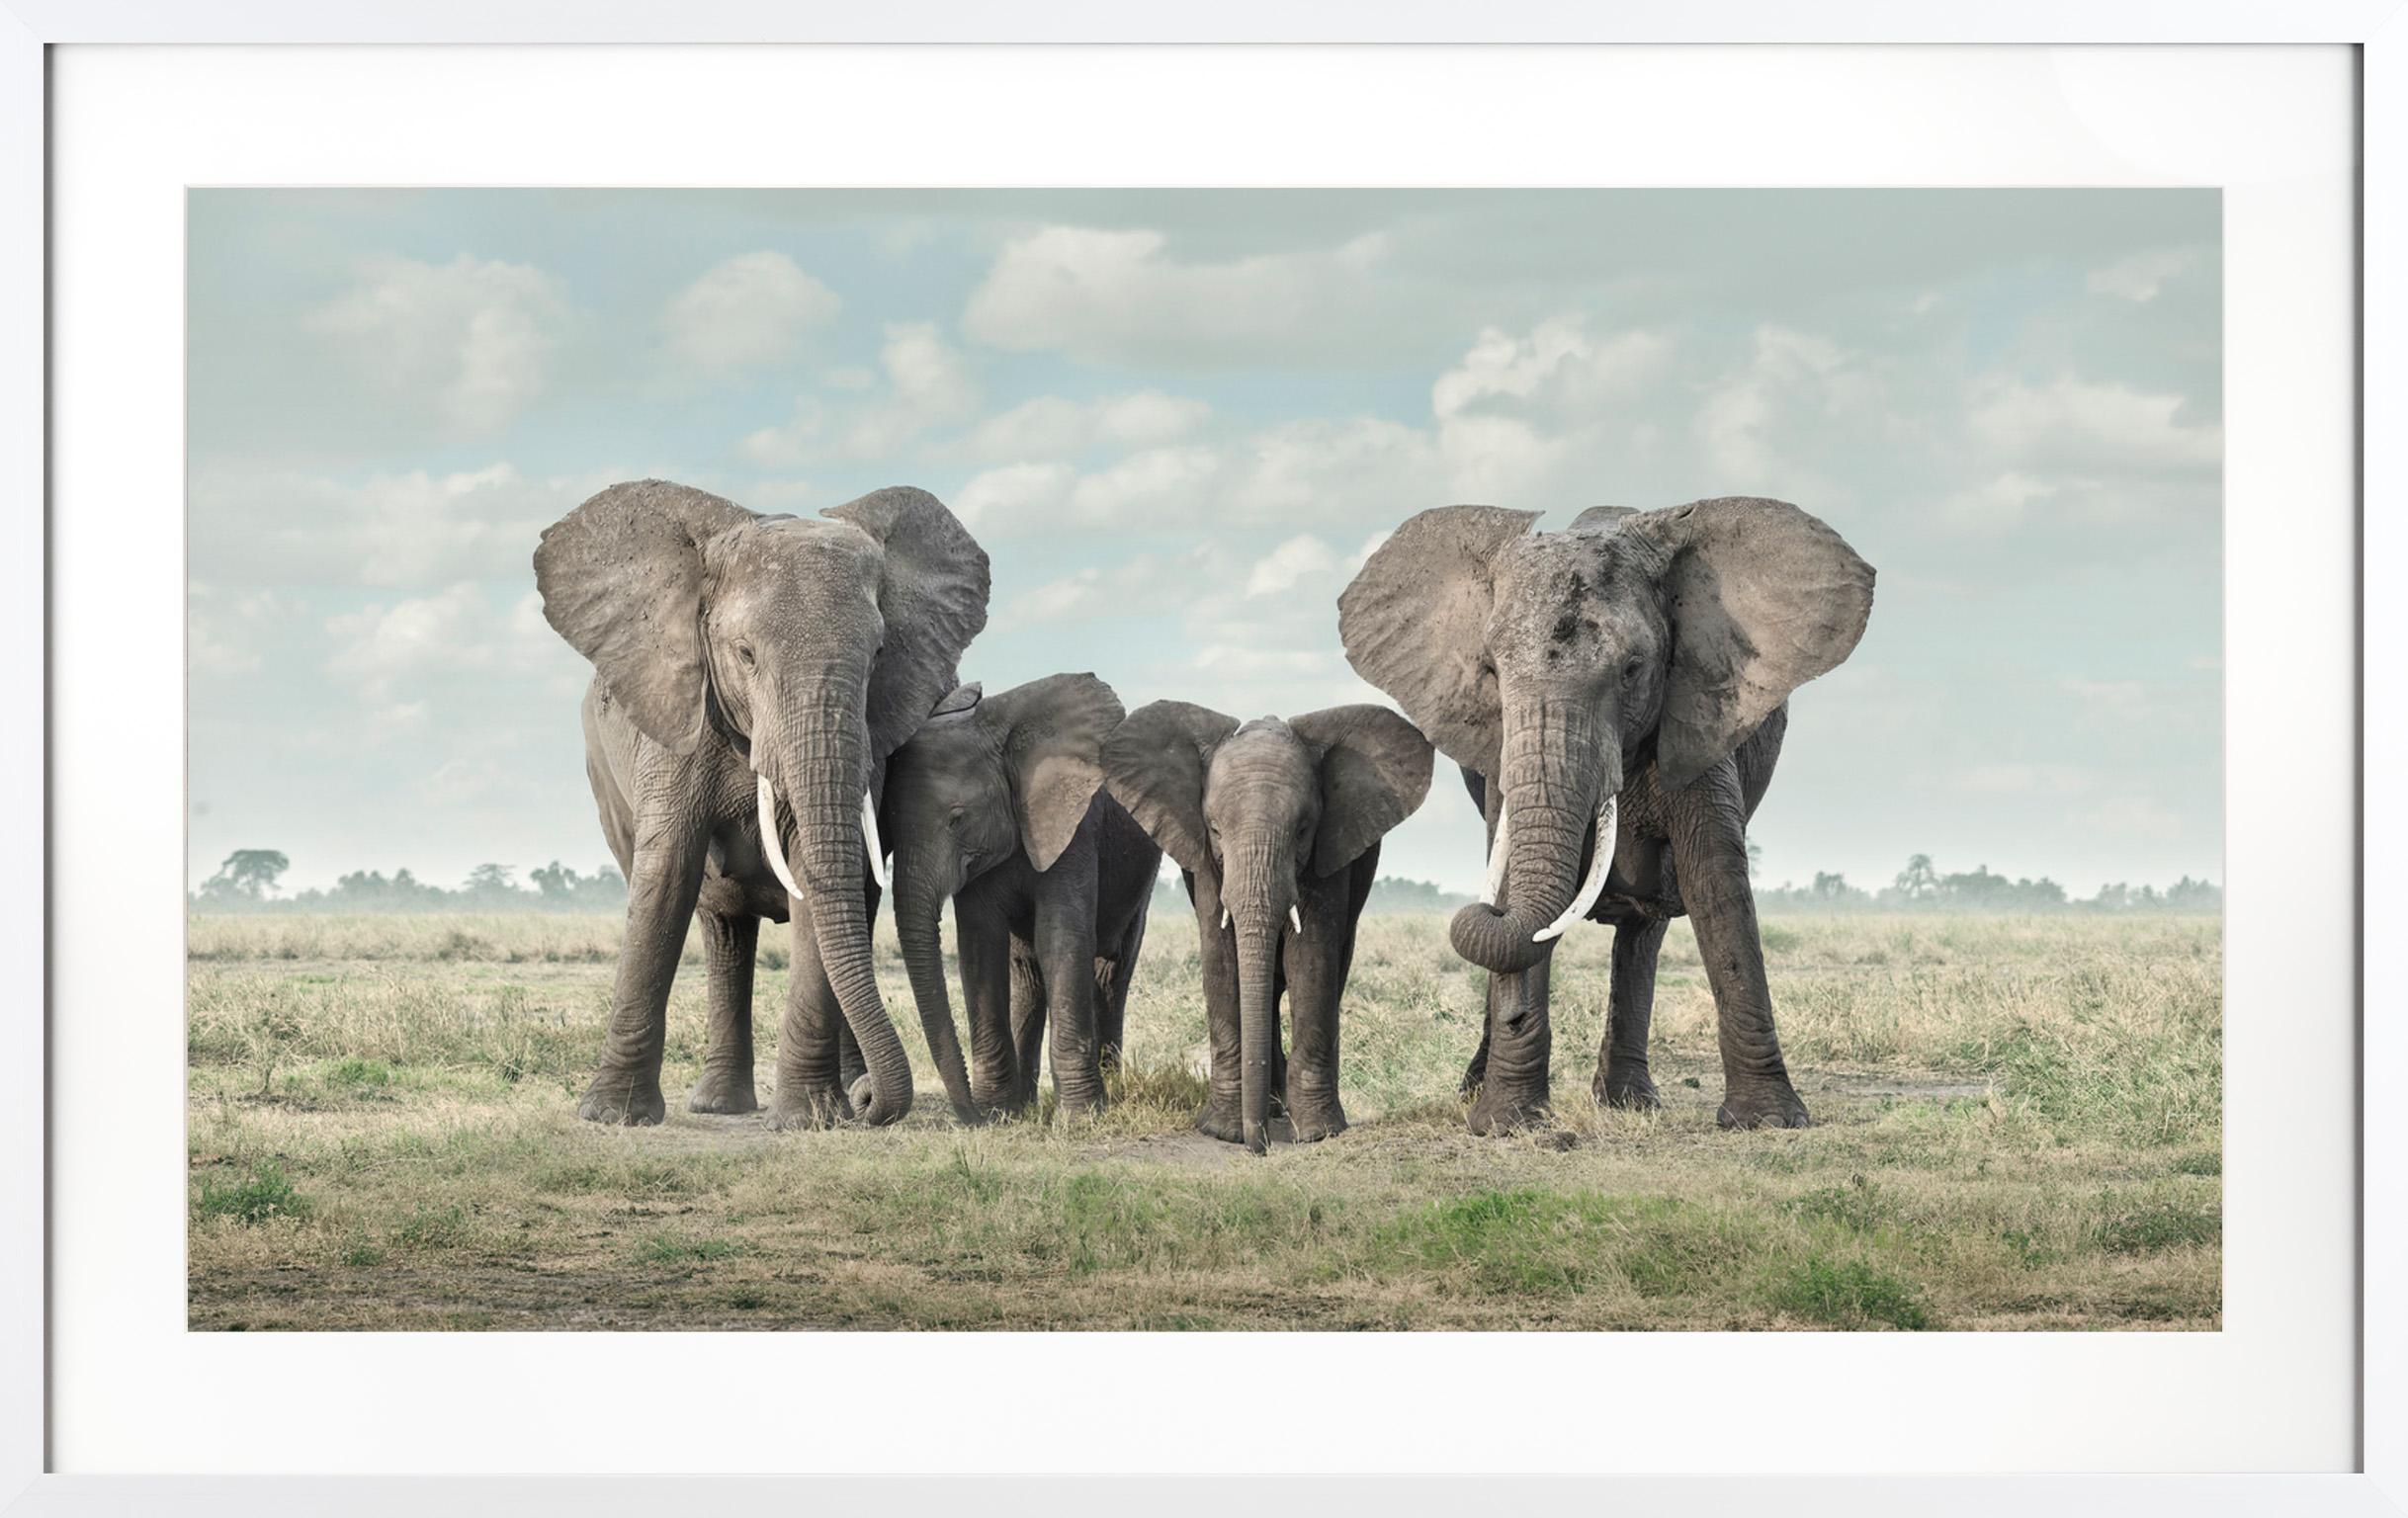 Color Photograph David Burdeny - "Solice, Amboseli, Kenya" Famille d'éléphants d'Afrique contemporaine Photographie encadrée